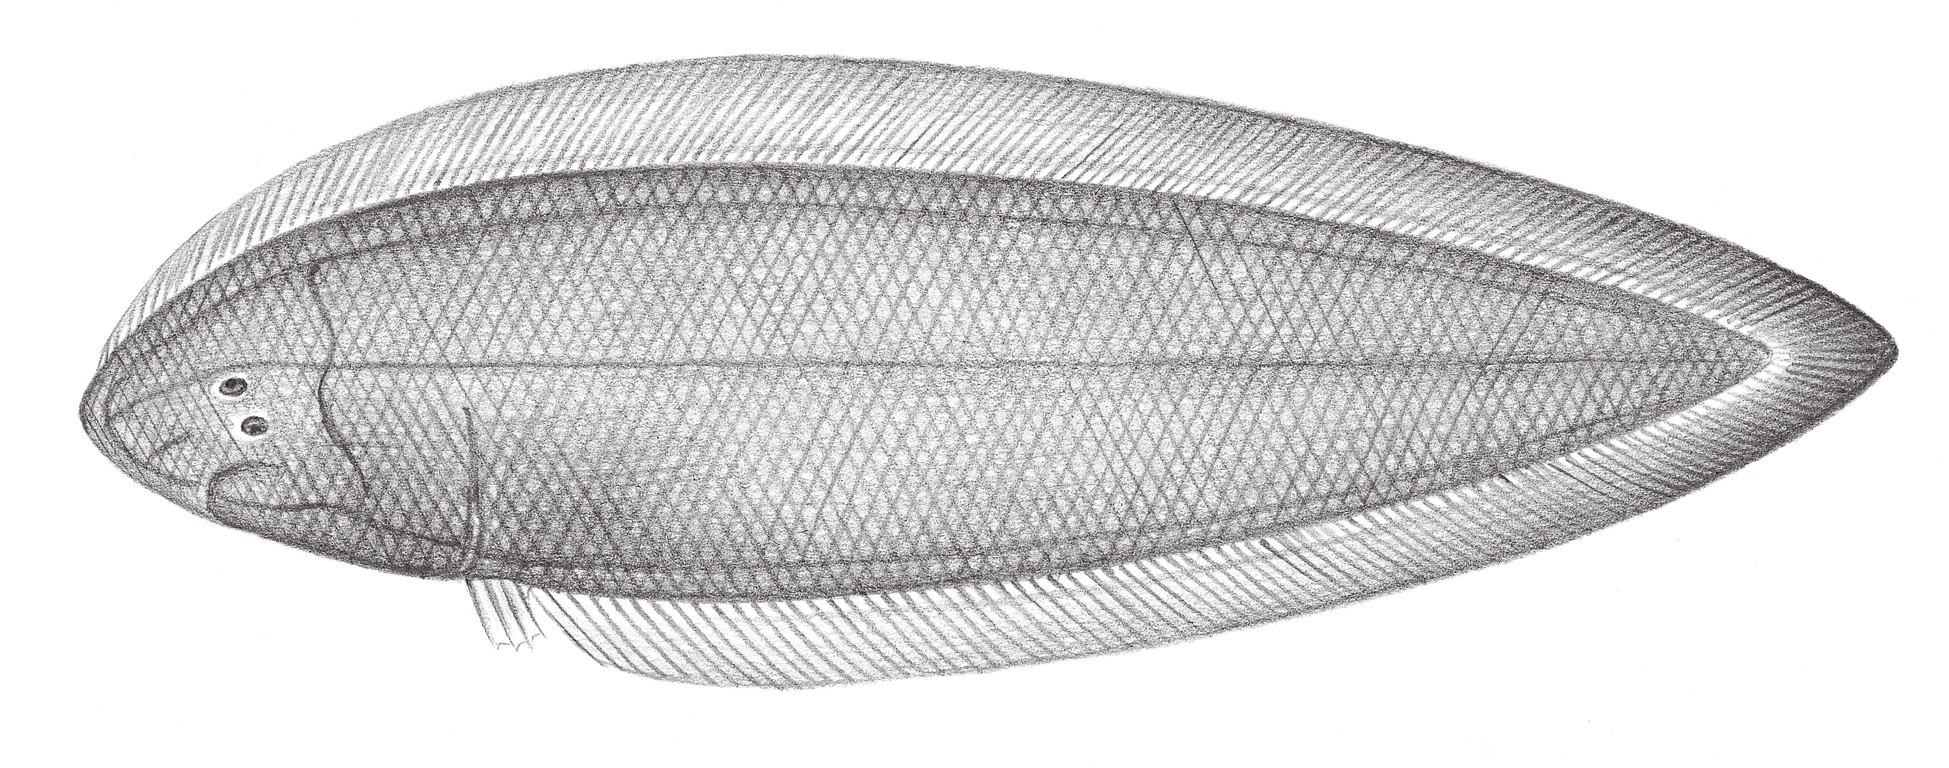 2459.	焦氏舌鰨 Cynoglossus joyneri Günther, 1873